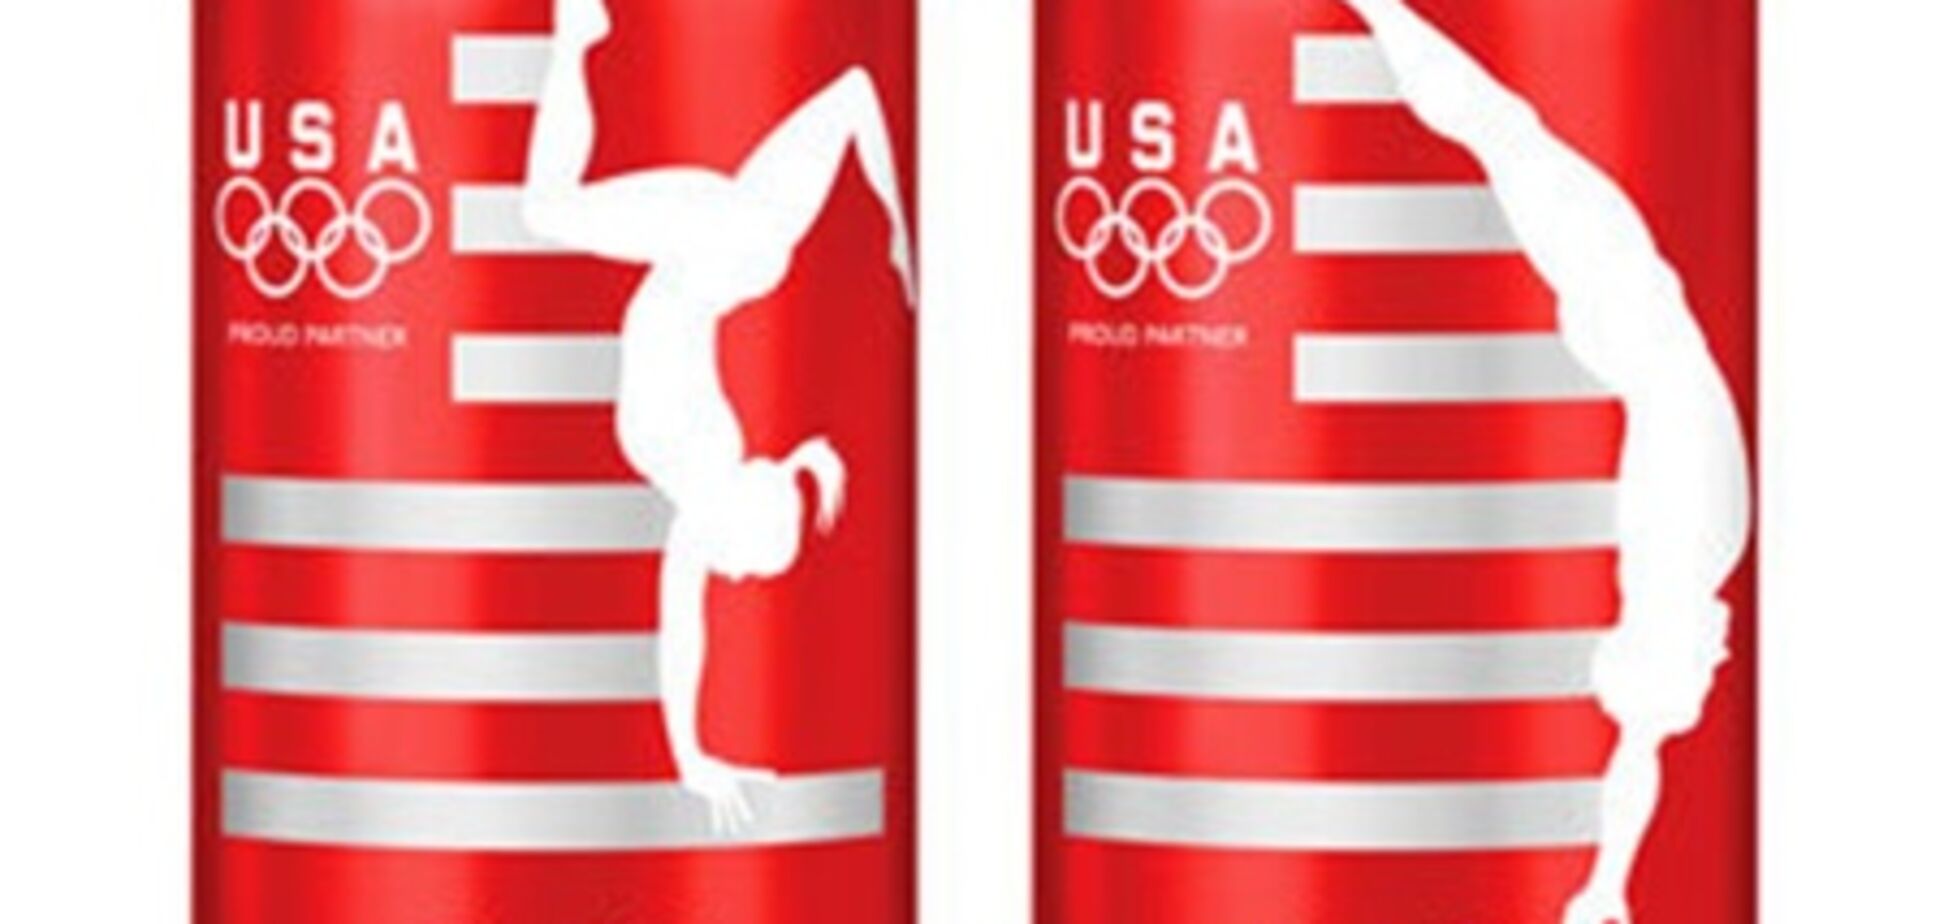 Сoca-Cola выпустила линию банок в поддержку США на Олимпиаде